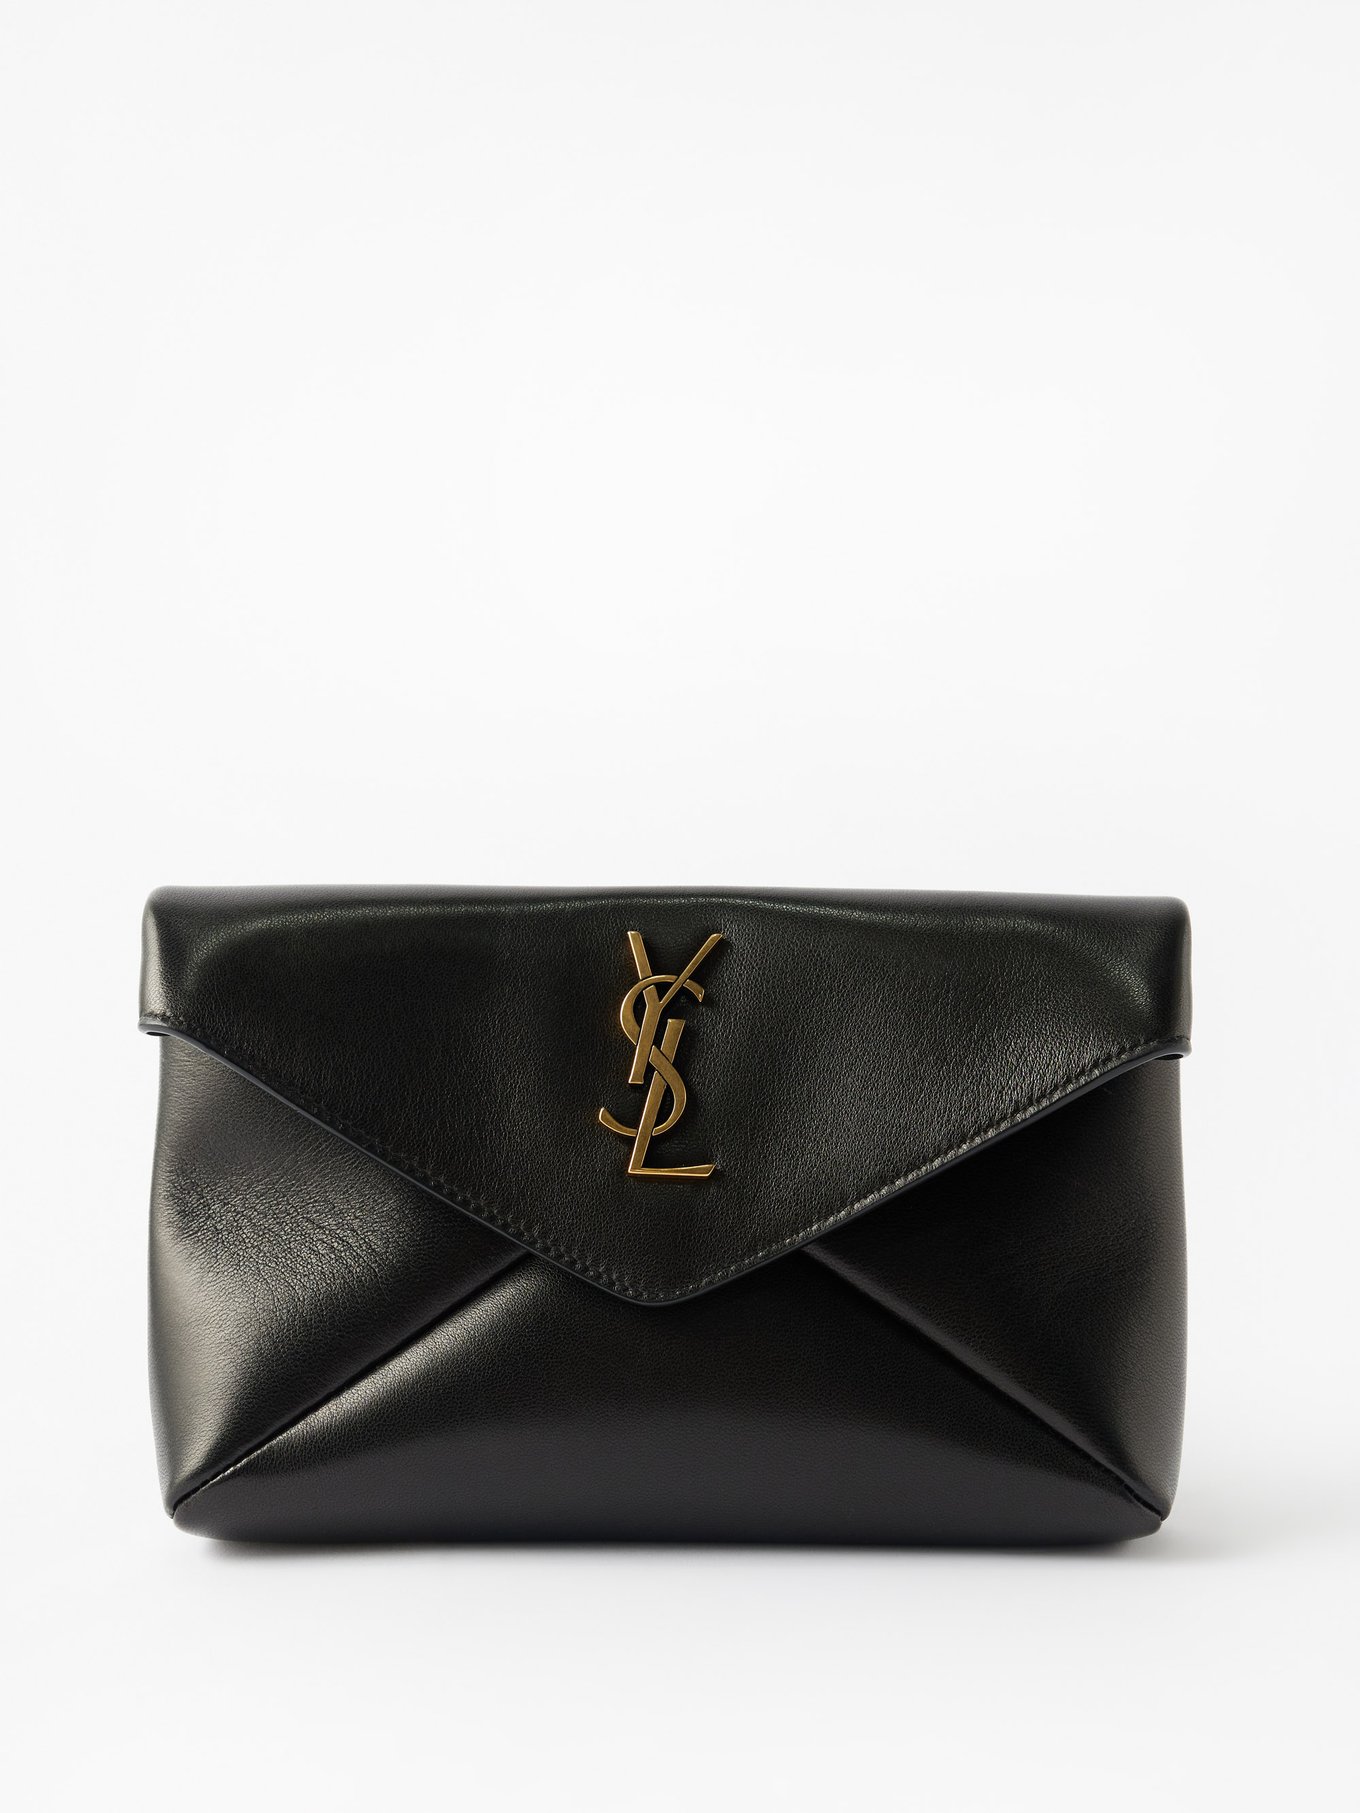 Black Cassandre small leather clutch bag, Saint Laurent